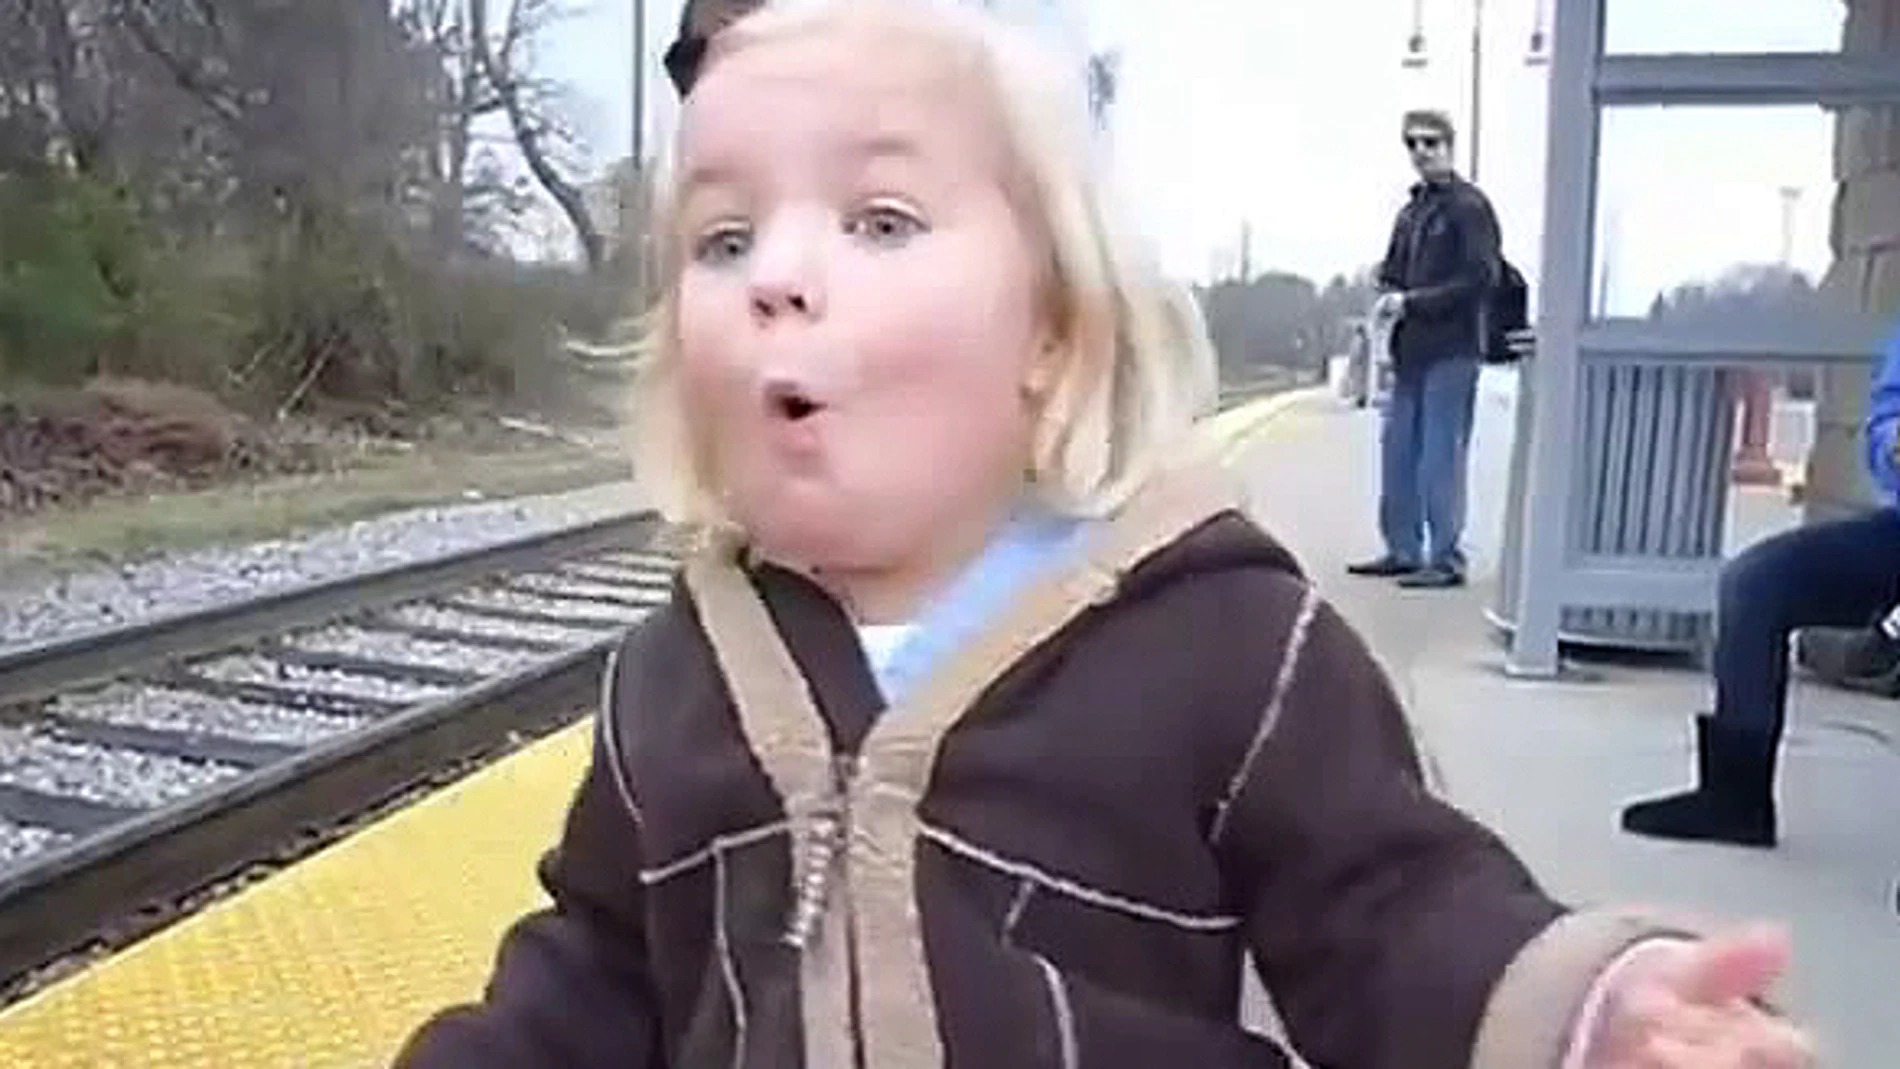 La pequeña Madeleine ve cómo llega el tren